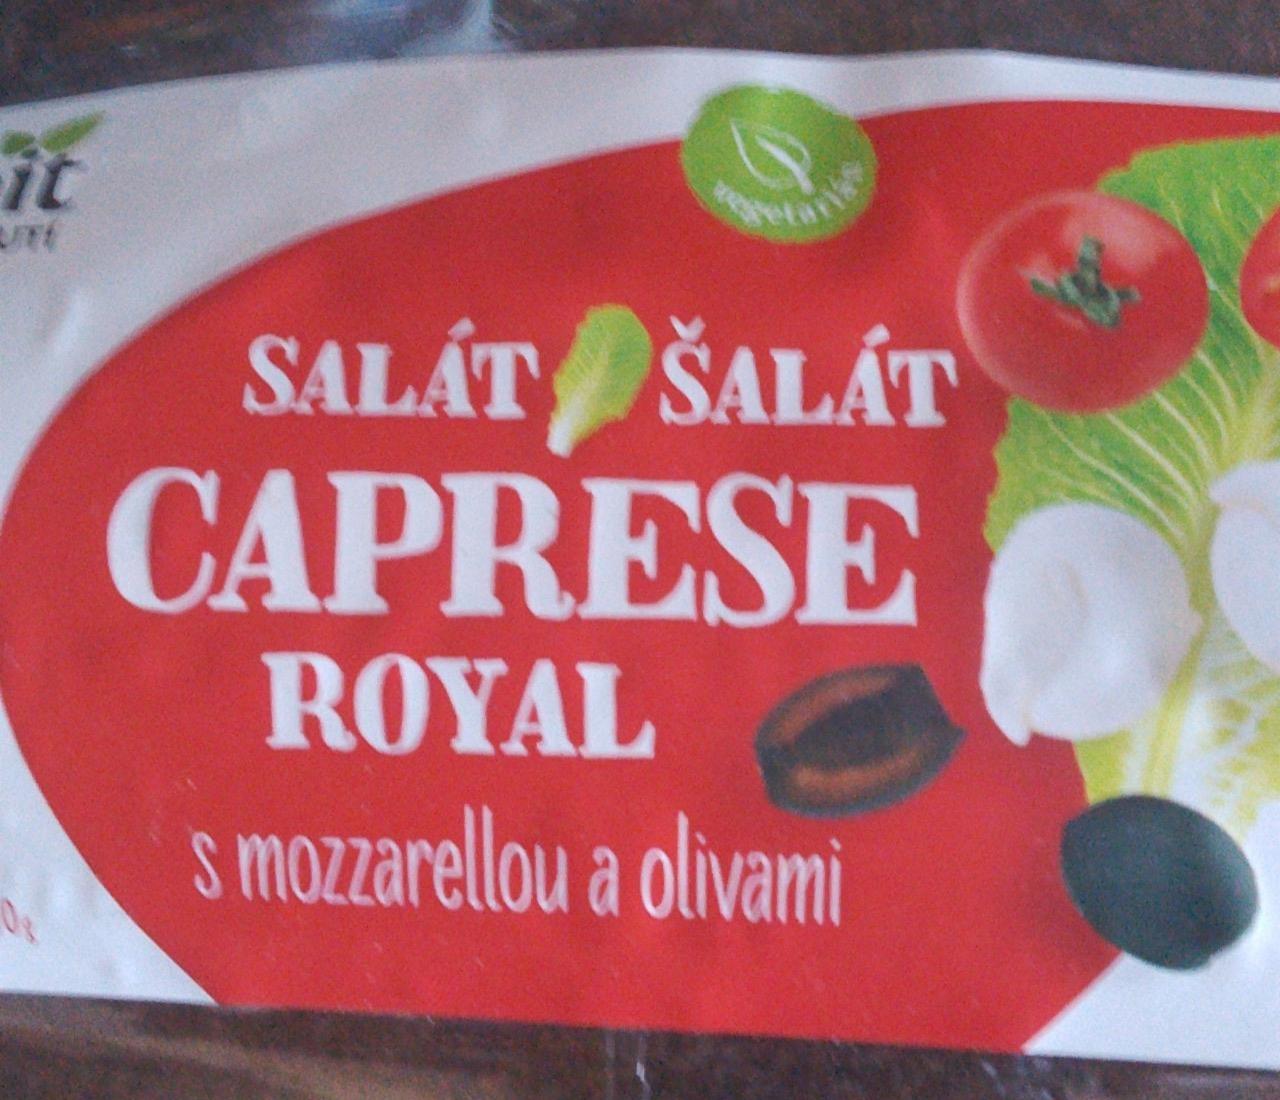 Képek - Caprese royal saláta mozzarellával és olivabogyóval